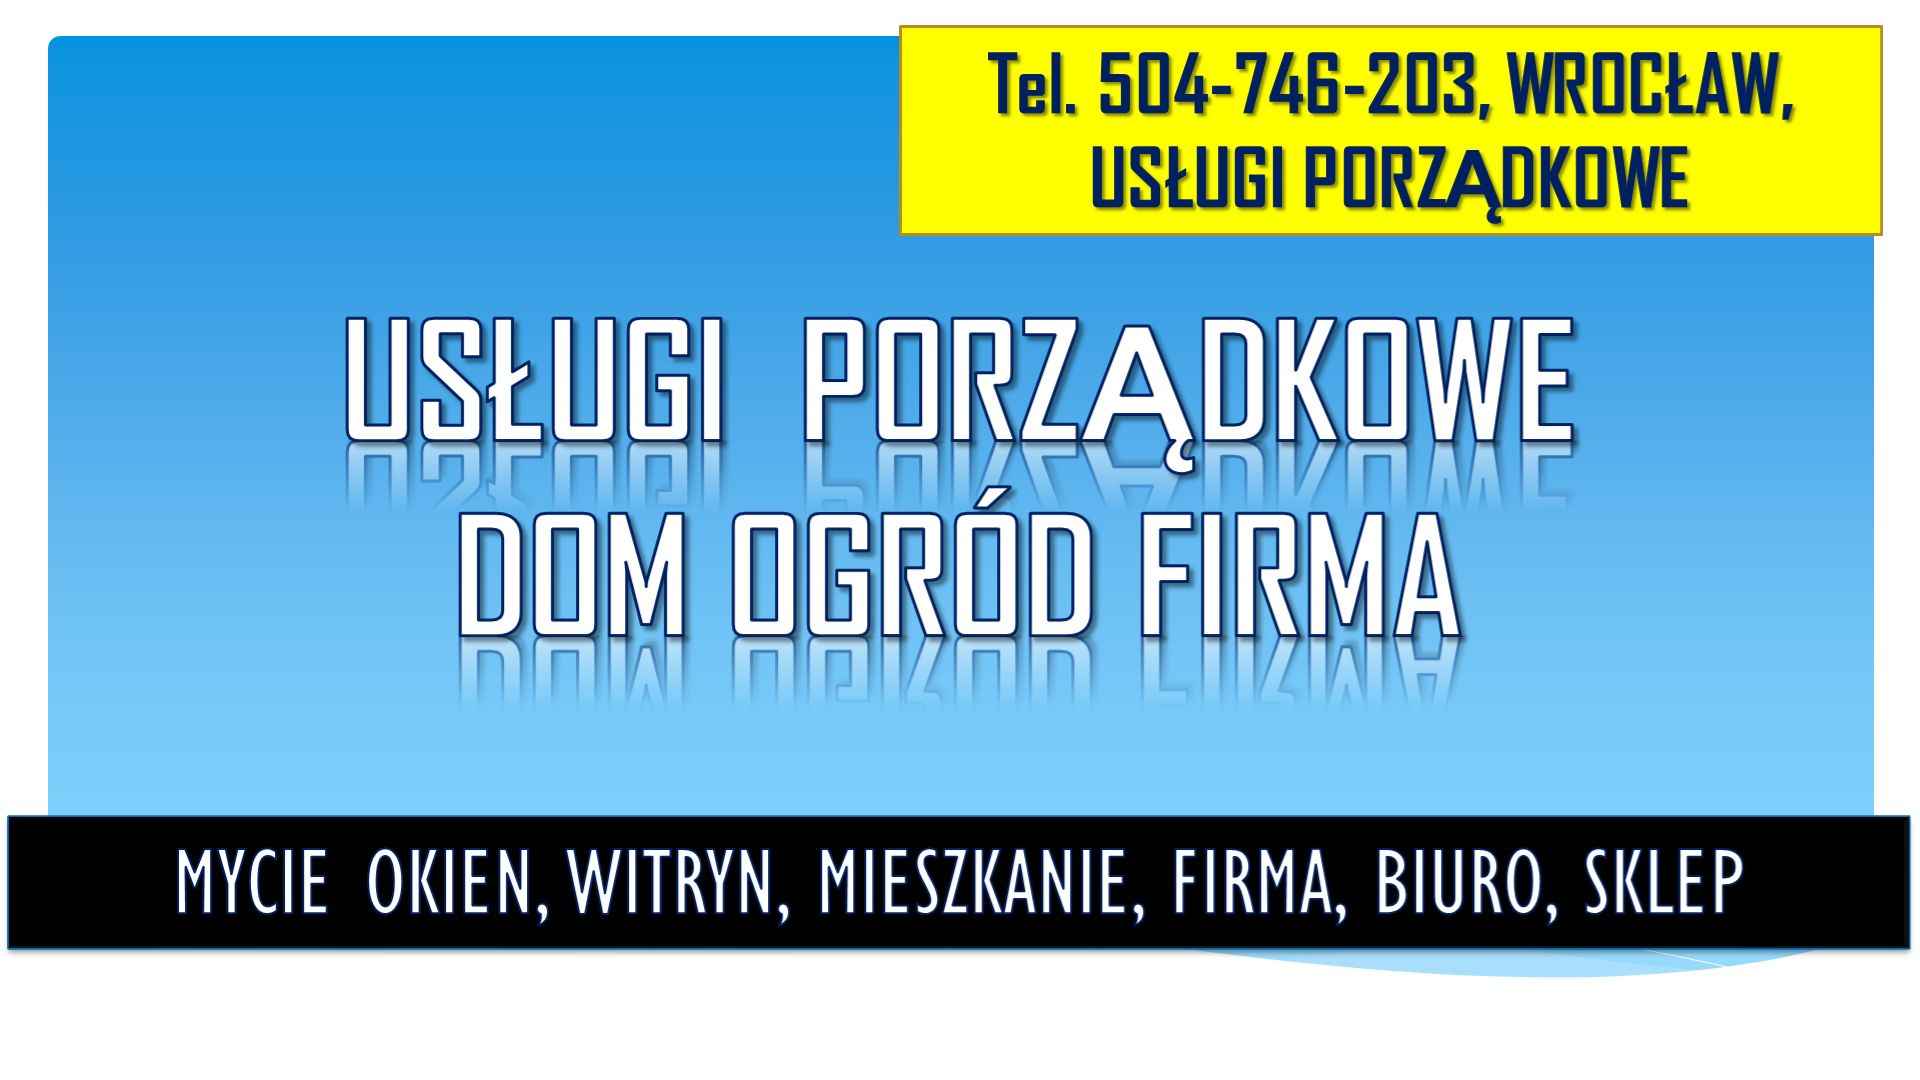 Cennik mycia okien, Wrocław, tel 504-746-203. Umycie witryny w sklepie Psie Pole - zdjęcie 4